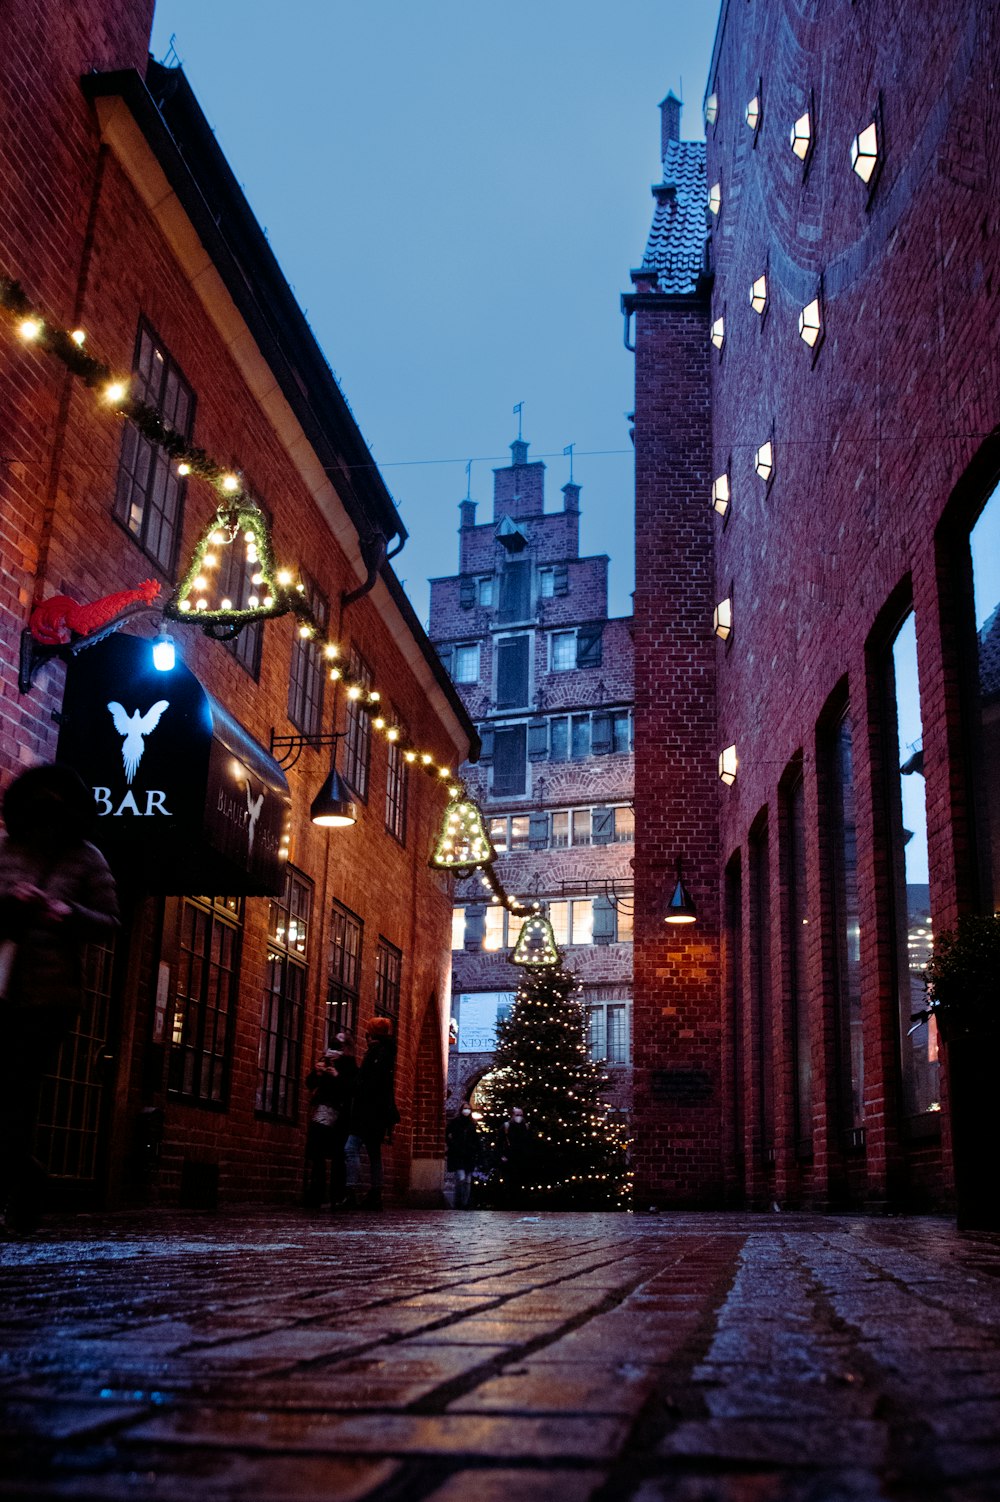 Eine gemauerte Gasse mit Weihnachtsbeleuchtung und Weihnachtsbaum